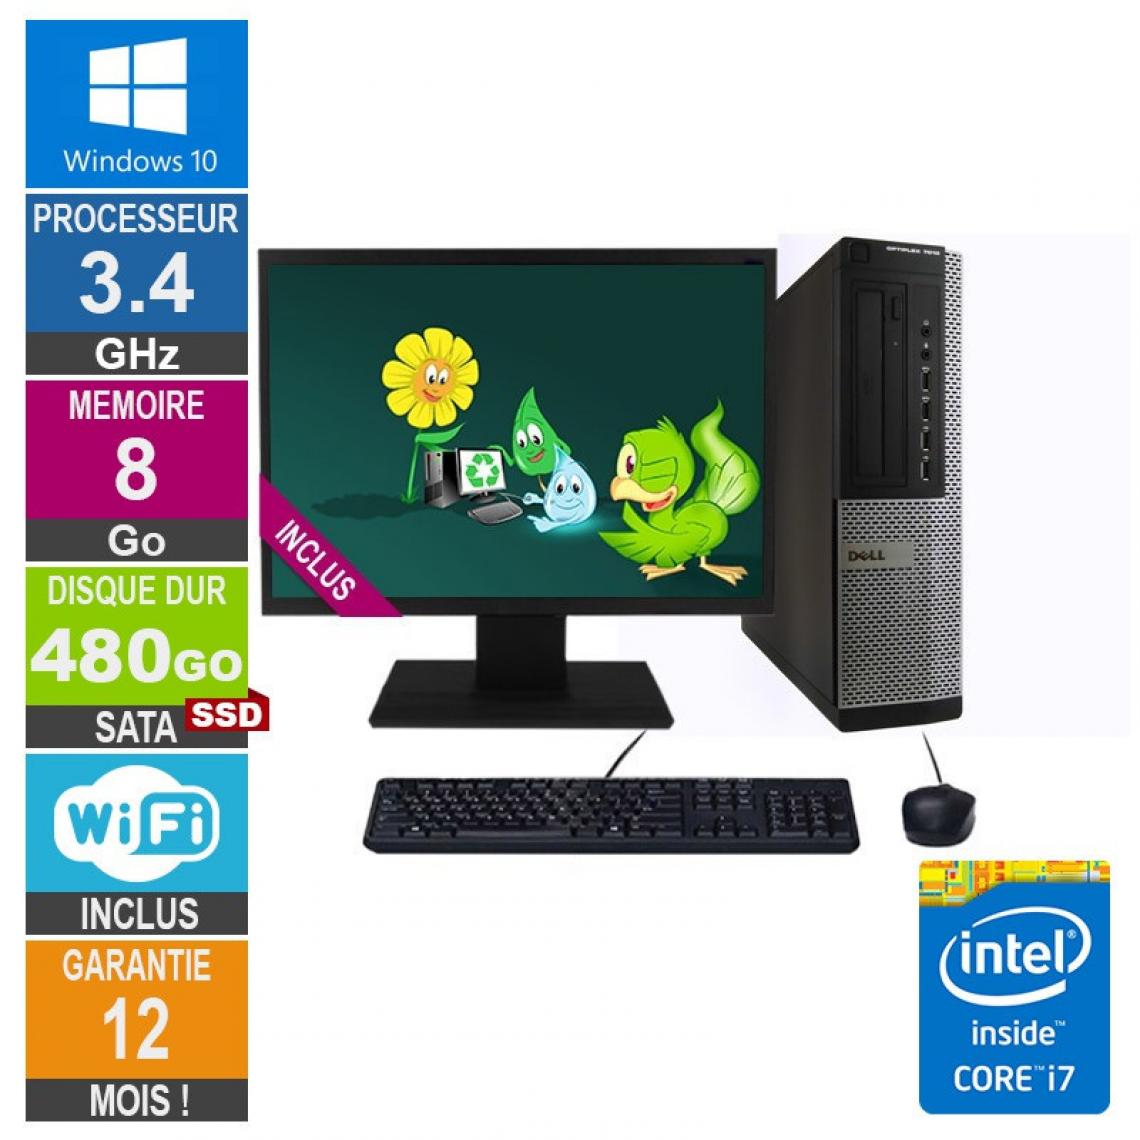 Dell - PC Dell 7010 DT Core i7-3770 3.40GHz 8Go/480Go SSD Wifi W10 + Ecran 19 - PC Fixe